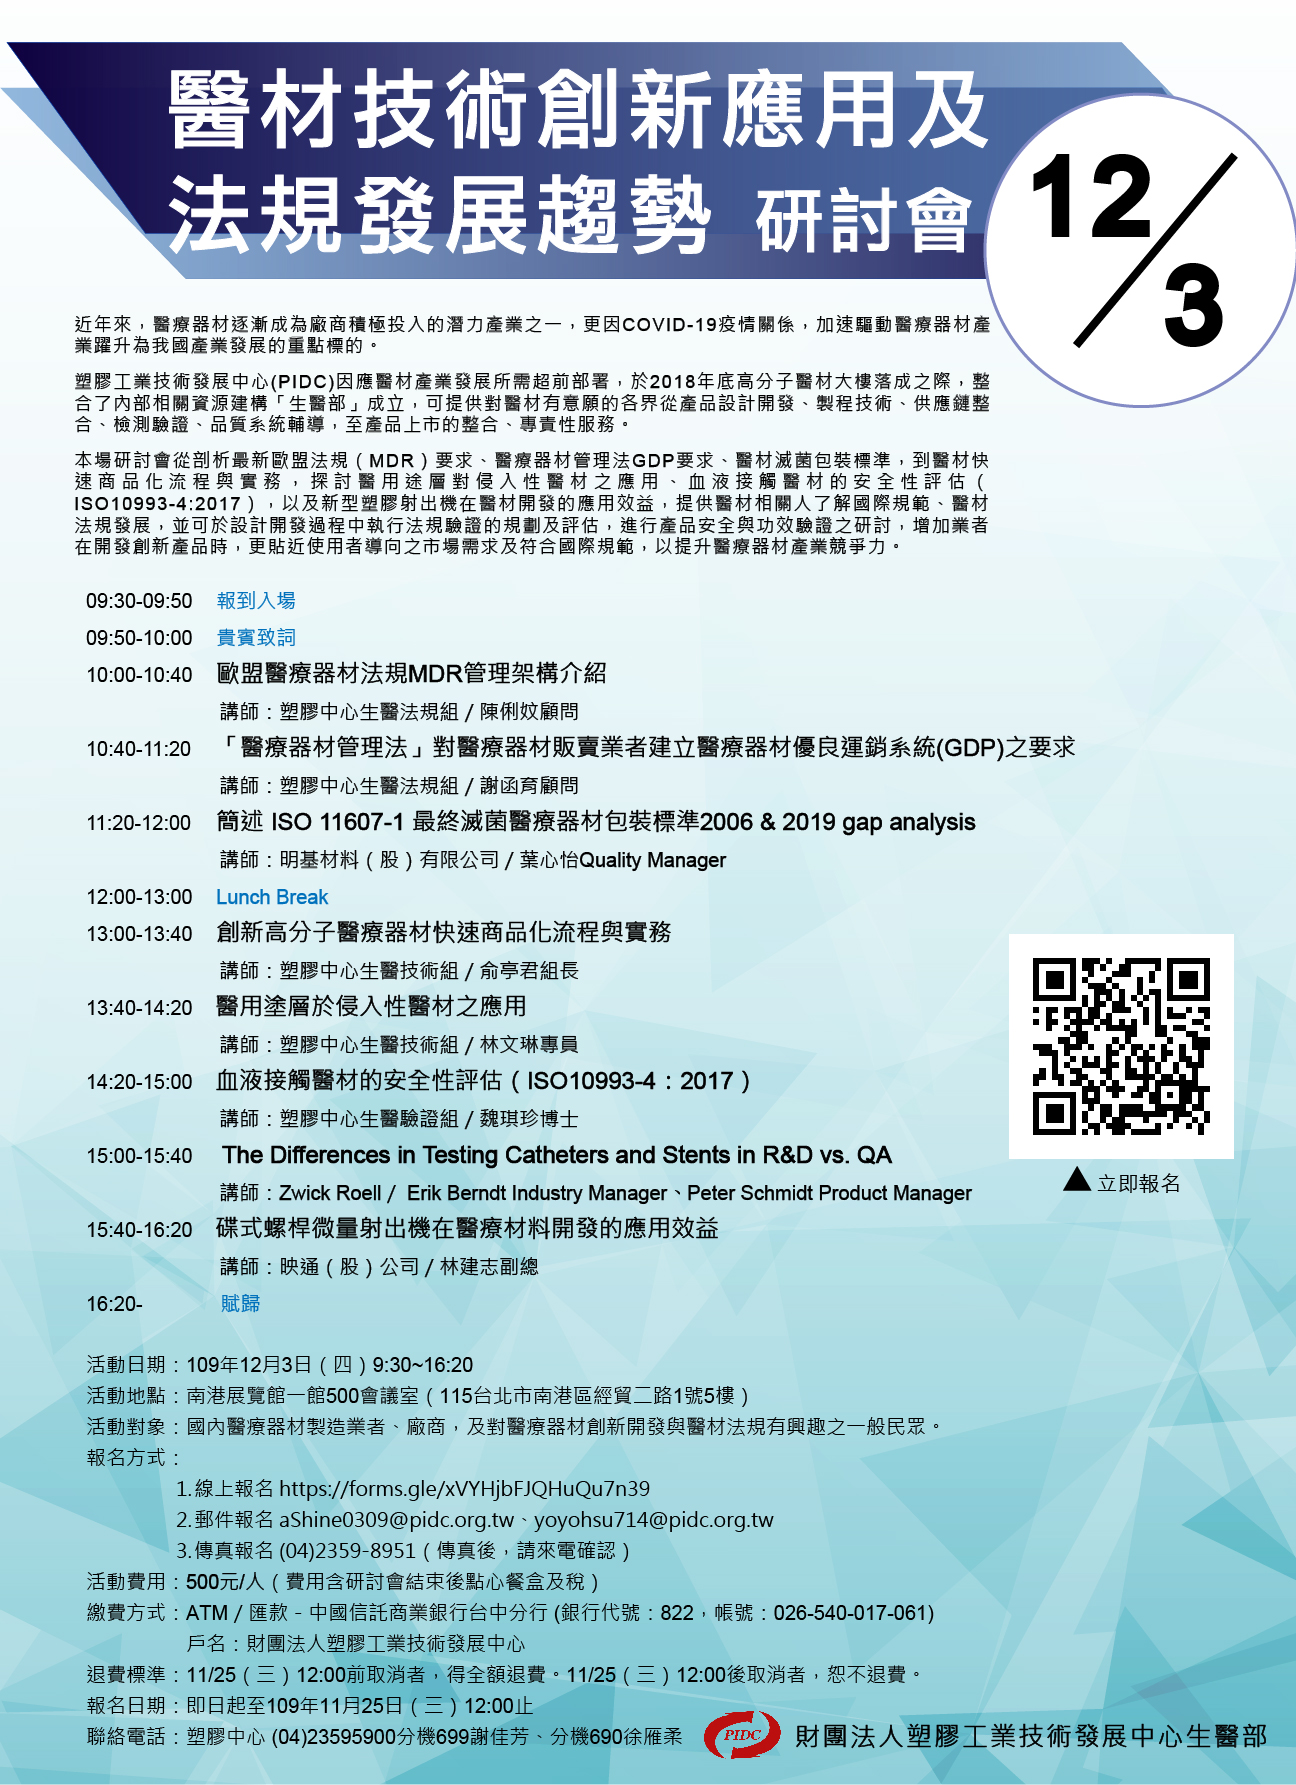 【研討會】「醫材技術創新應用及法規發展趨勢」研討會